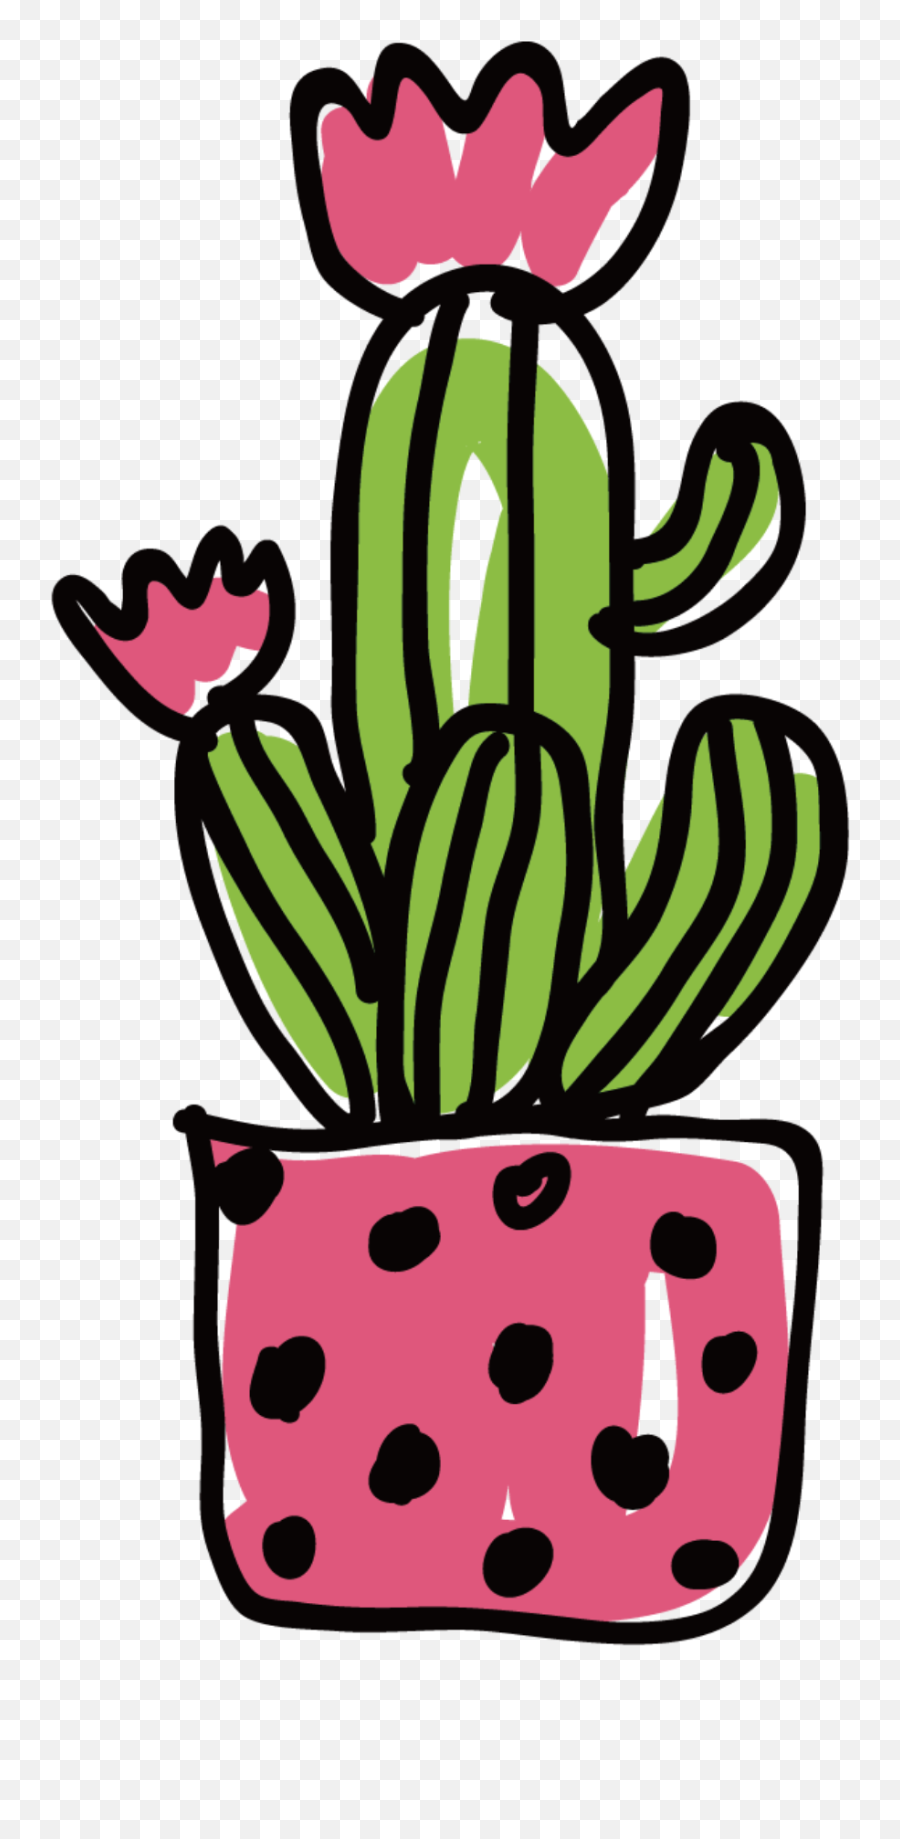 Cactus Vector Png - Vector Cactus Flower Illustration Transparent Cactus Flower Cartoon Emoji,Cactus Clipart